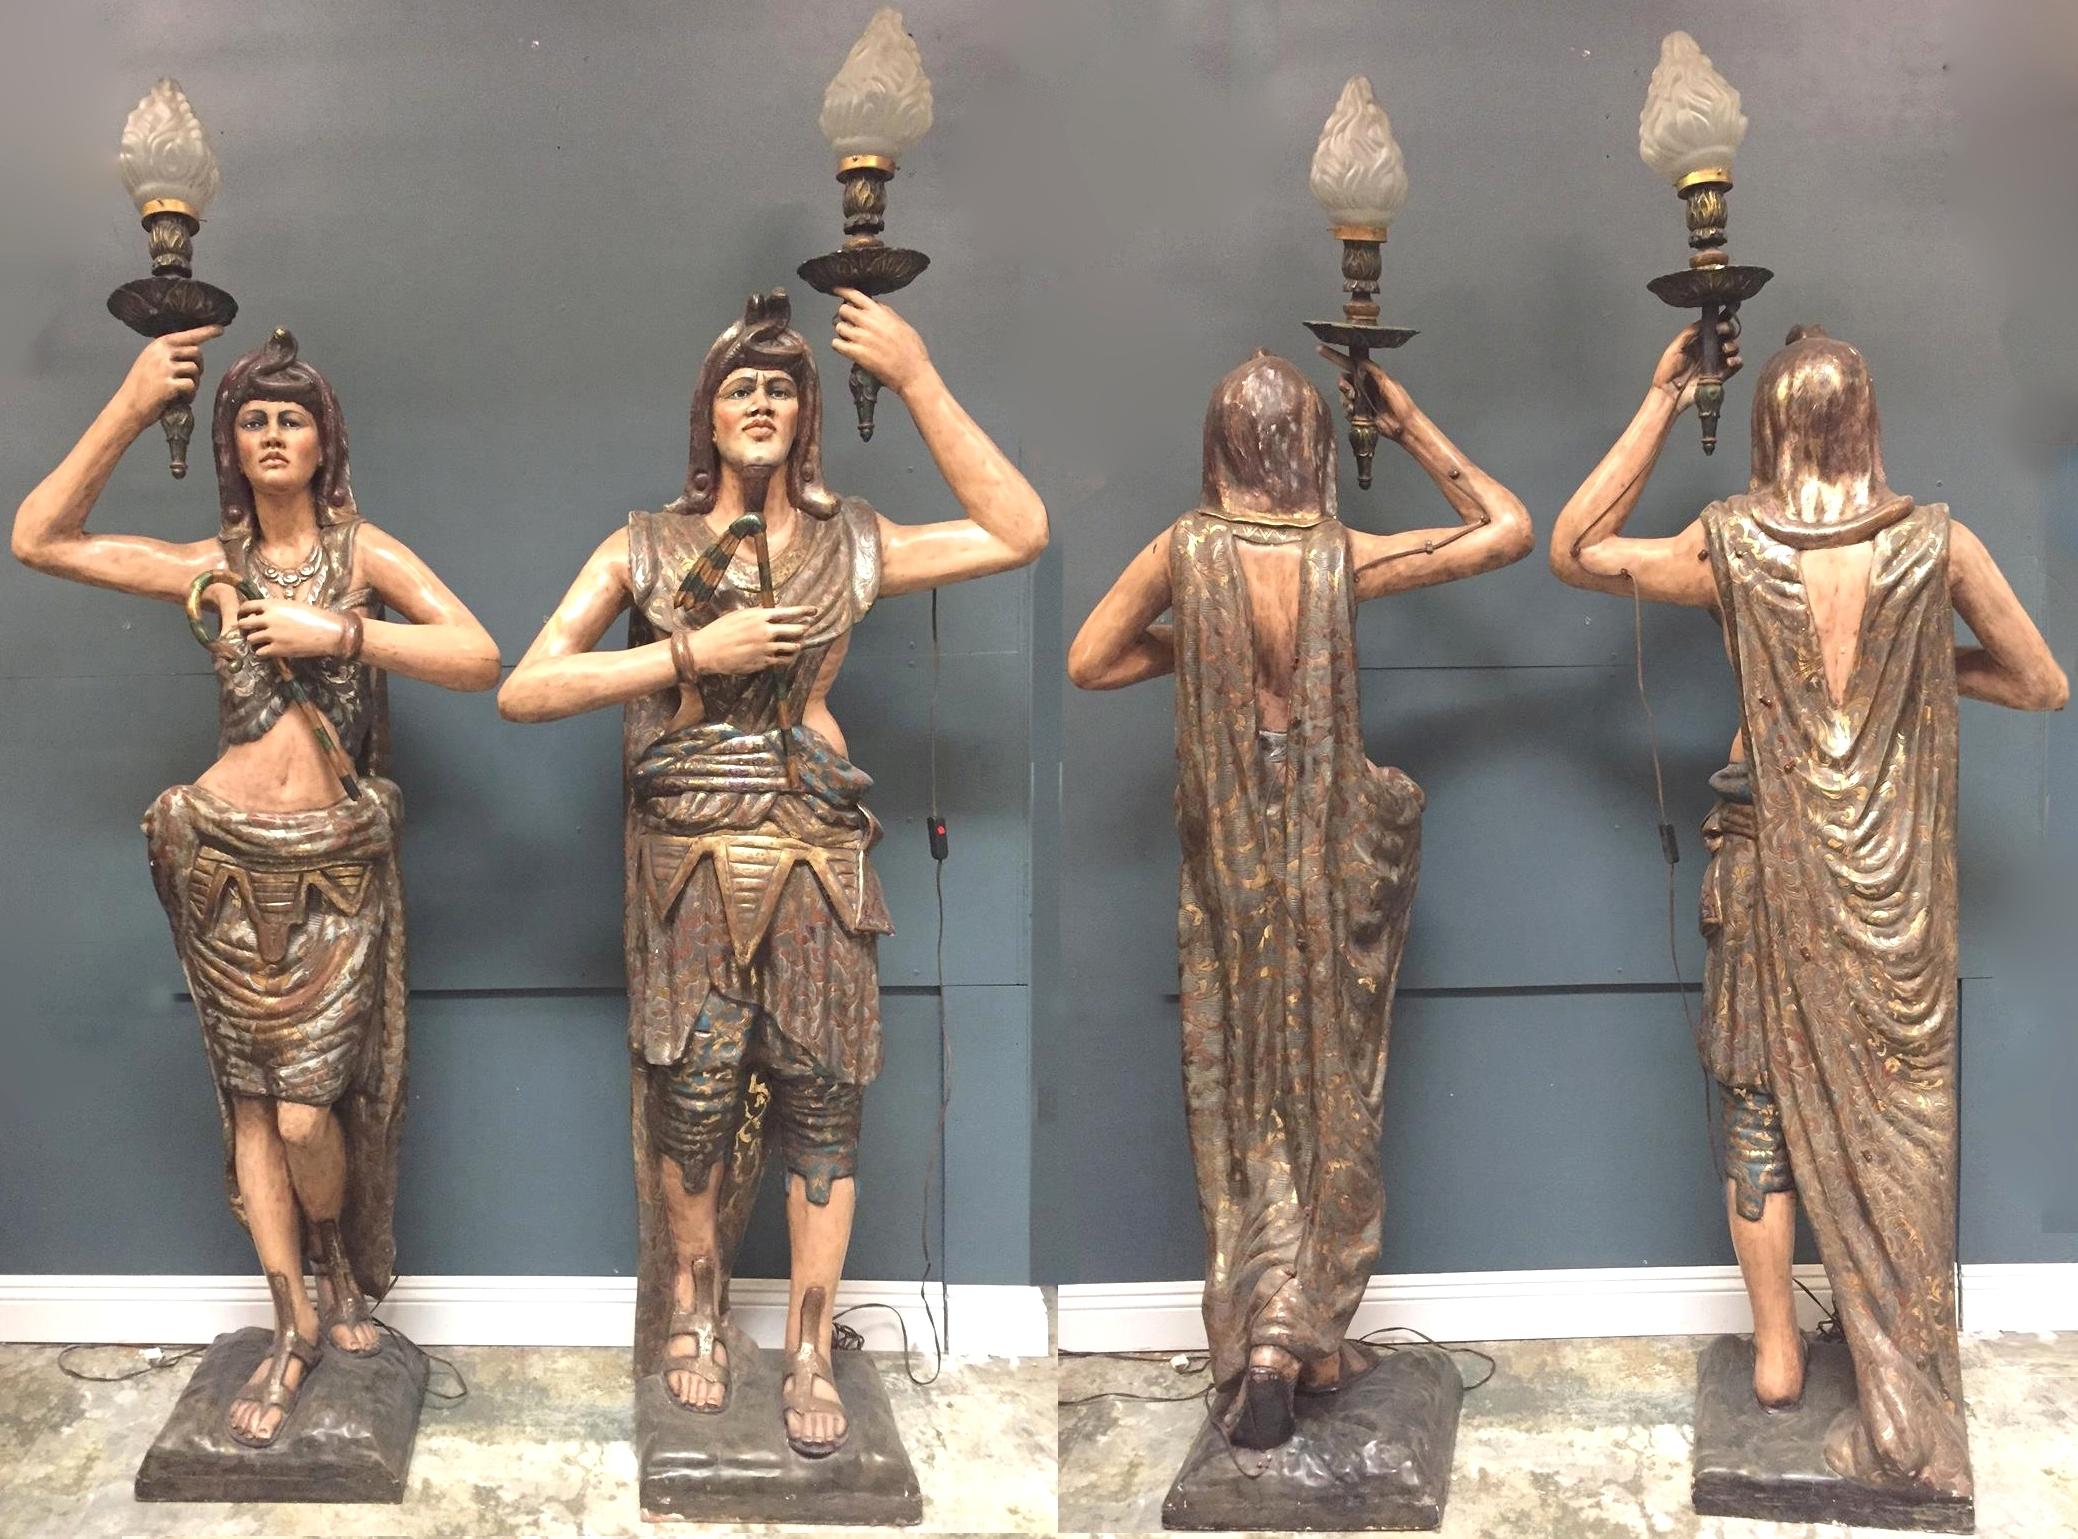 Impressionnante paire opposée de torches figuratives vénitiennes de style égyptien, polychromées et décorées à la peinture.
Début du 20e siècle.

Un homme et une femme nubiens grandeur nature, chacun vêtu de vêtements traditionnels polychromes de